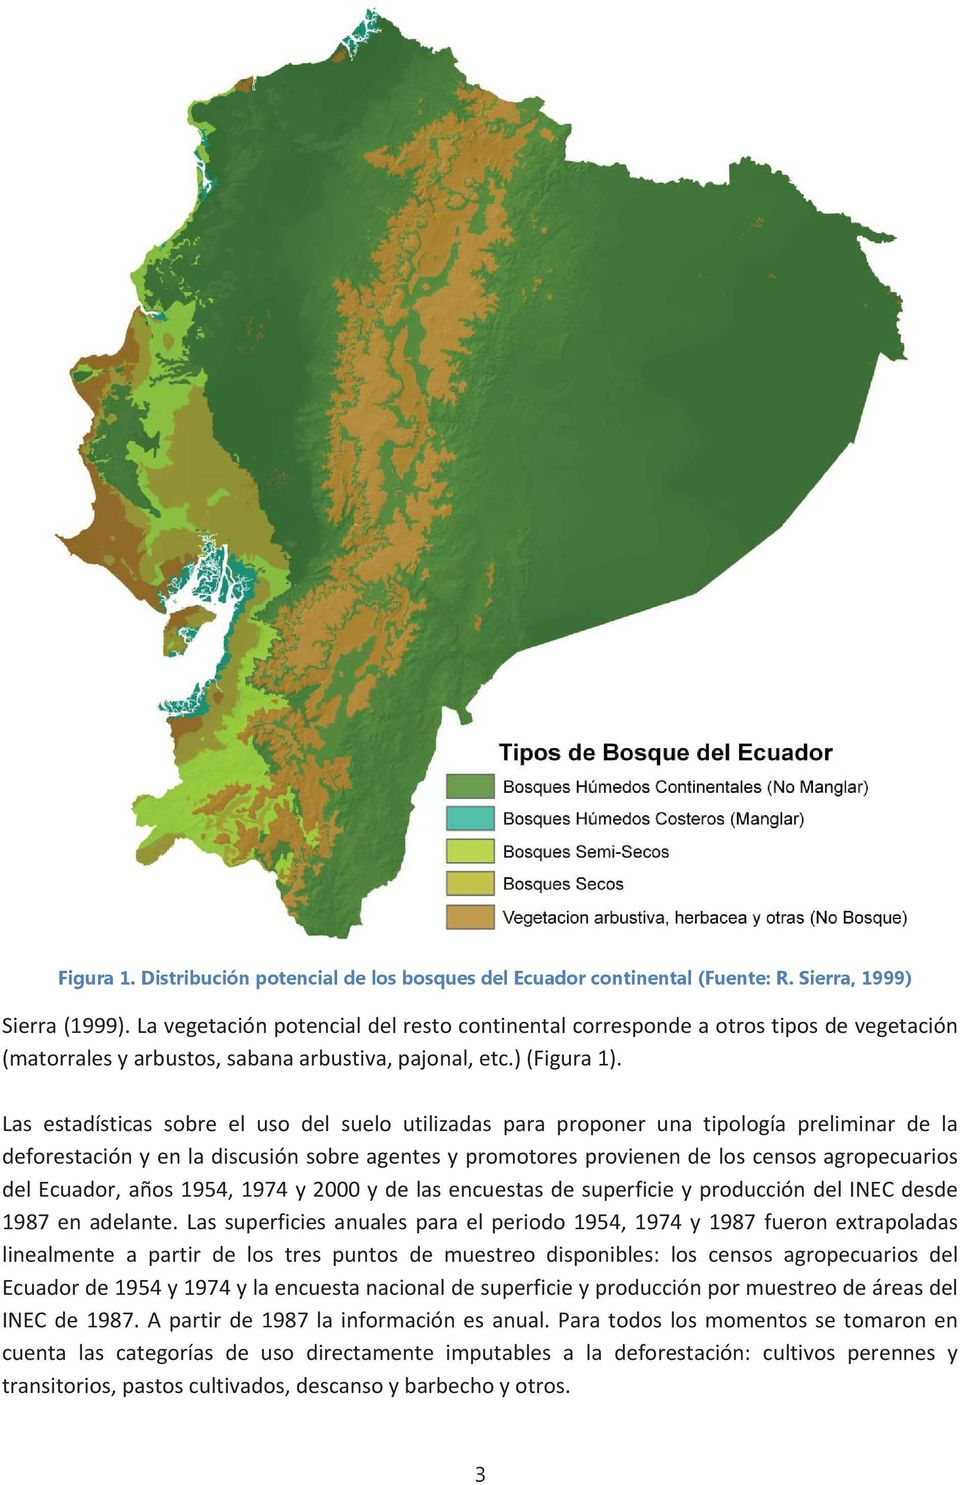 Las estadísticas sobre el uso del suelo utilizadas para proponer una tipología preliminar de la deforestaciónyenladiscusiónsobreagentesypromotoresprovienendeloscensosagropecuarios